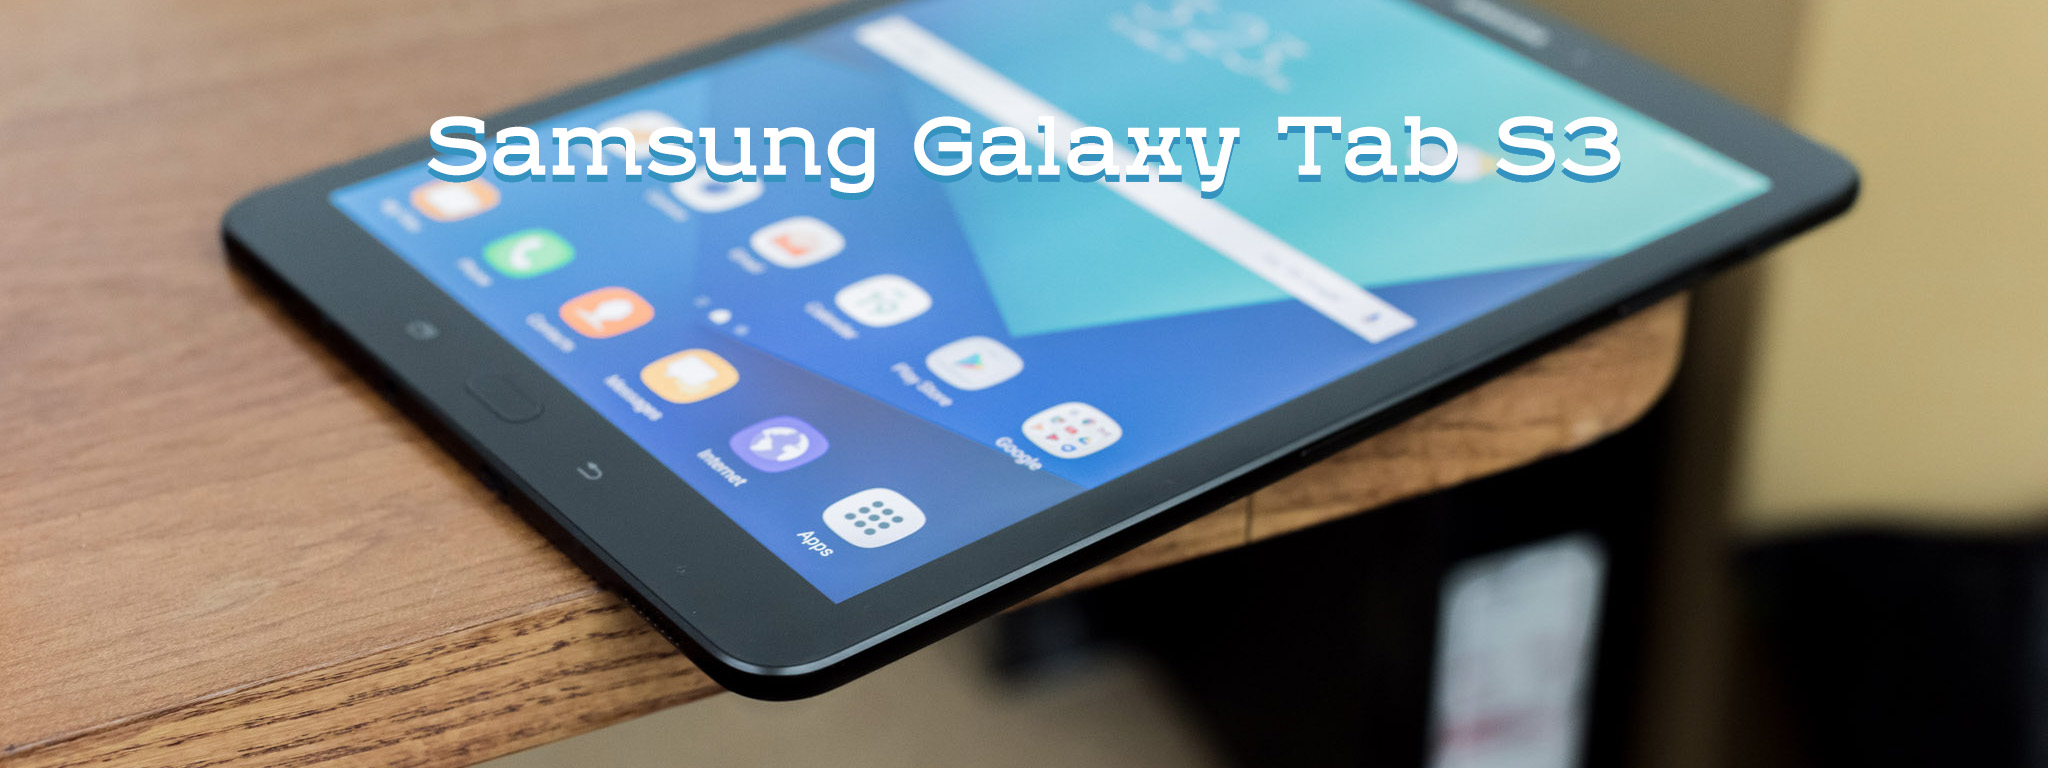 Trên tay Samsung Galaxy Tab S3 bản thương mại: cao cấp, kèm S Pen, 4 loa, 2 mặt kính